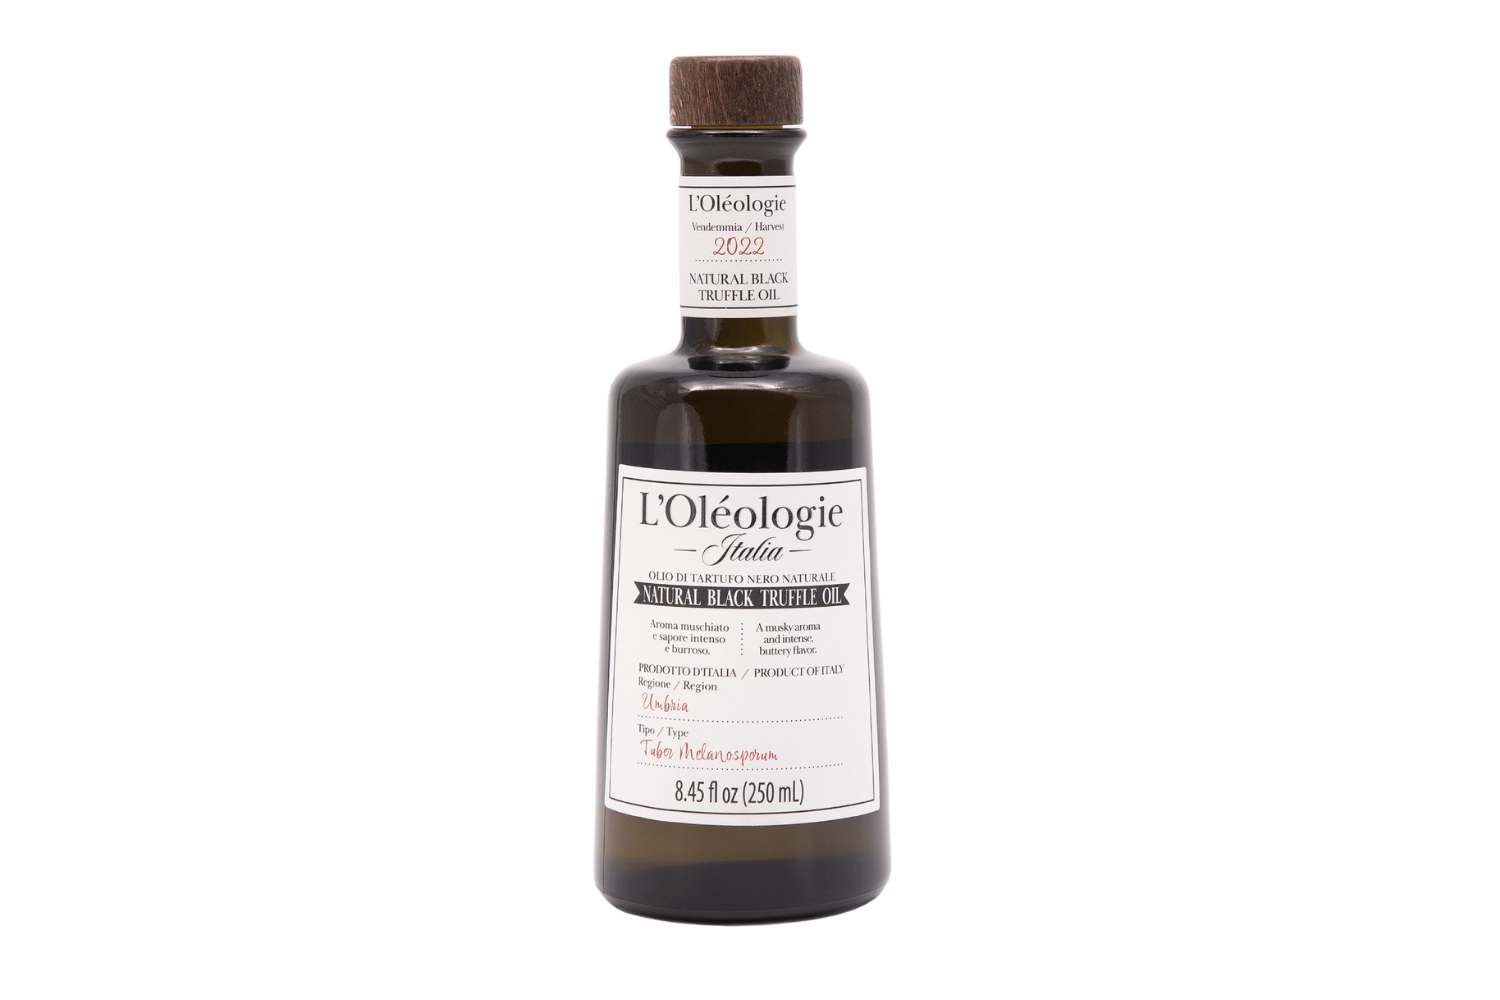 L'Olèologie Truffle Oil & Balsamic Vinegar 4 Pack Gift Set (Large)